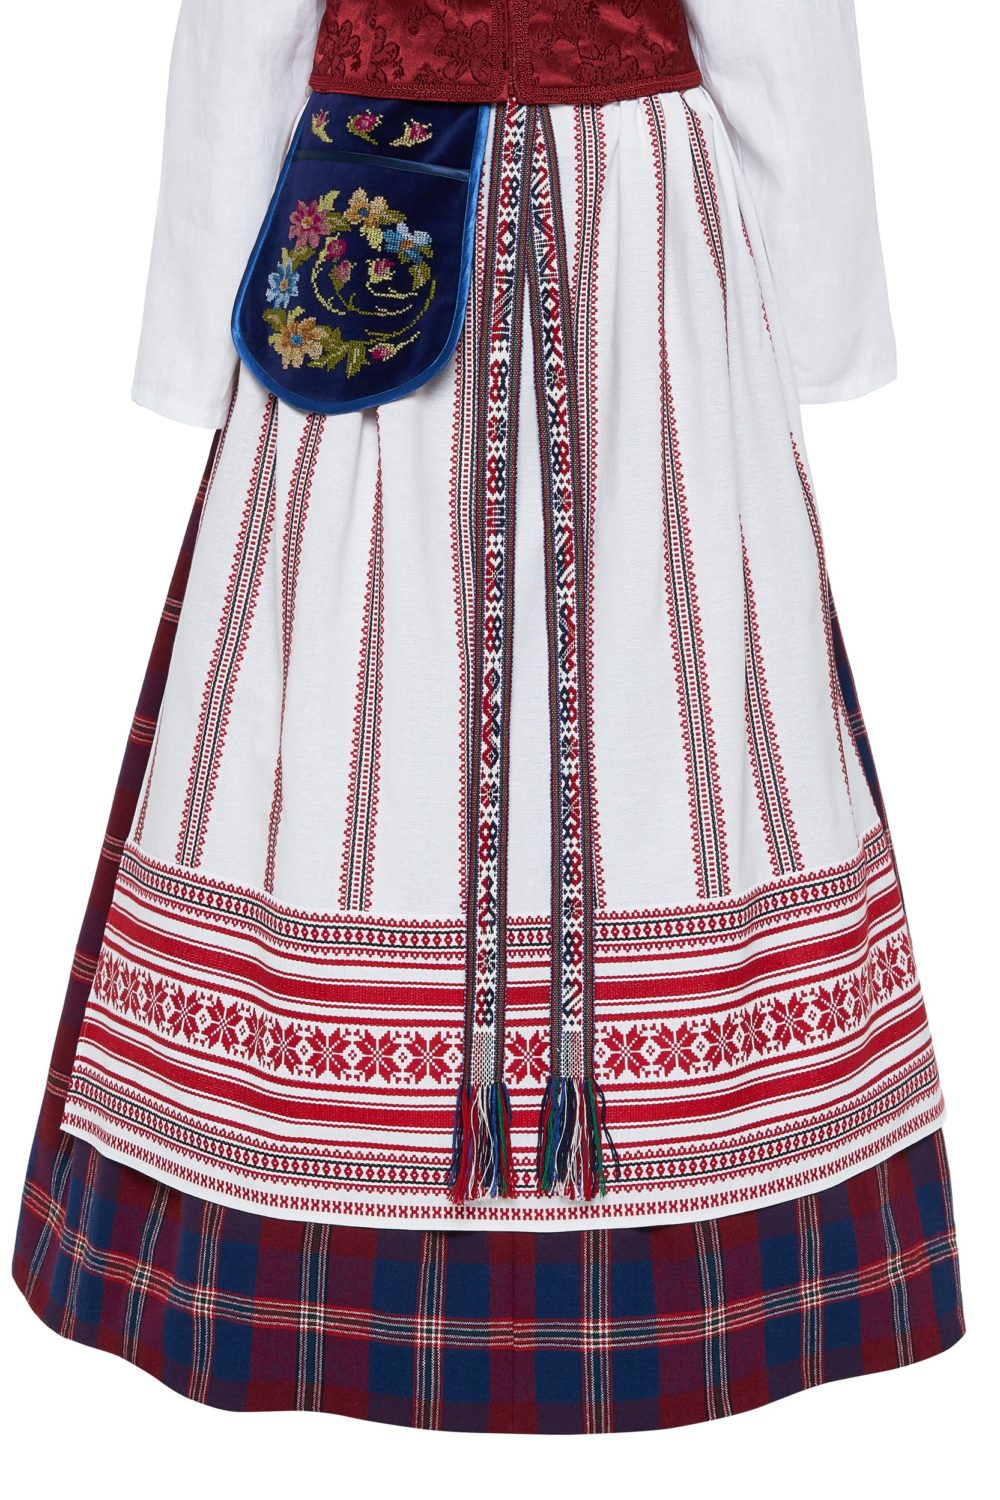 Klaipėdos krašto moteriškas tautinis kostiumas KKLP5